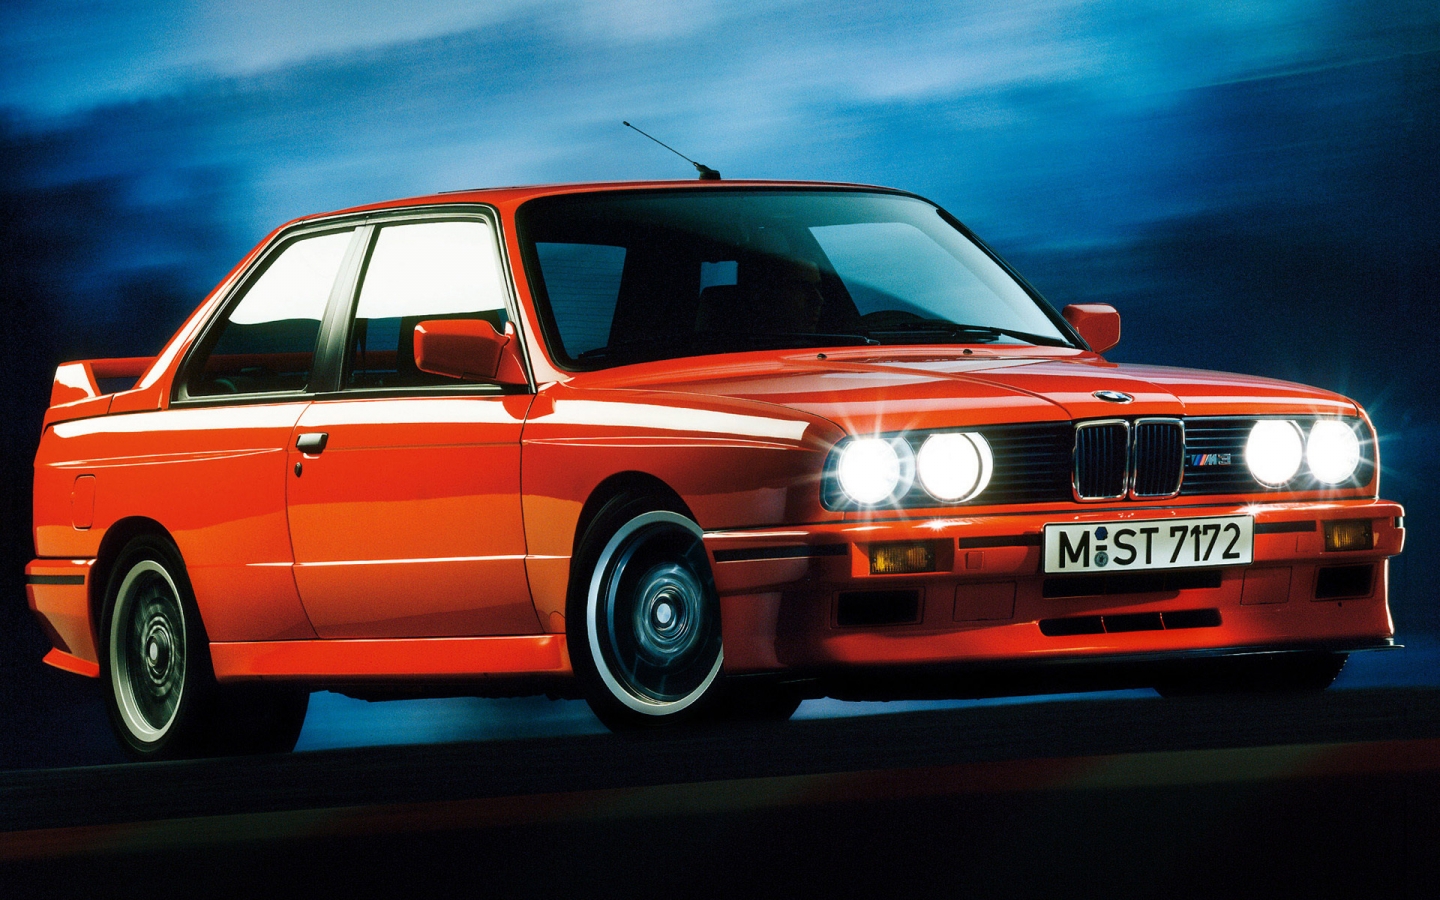 BMW M3 Sport Evolution E30 for 1440 x 900 widescreen resolution